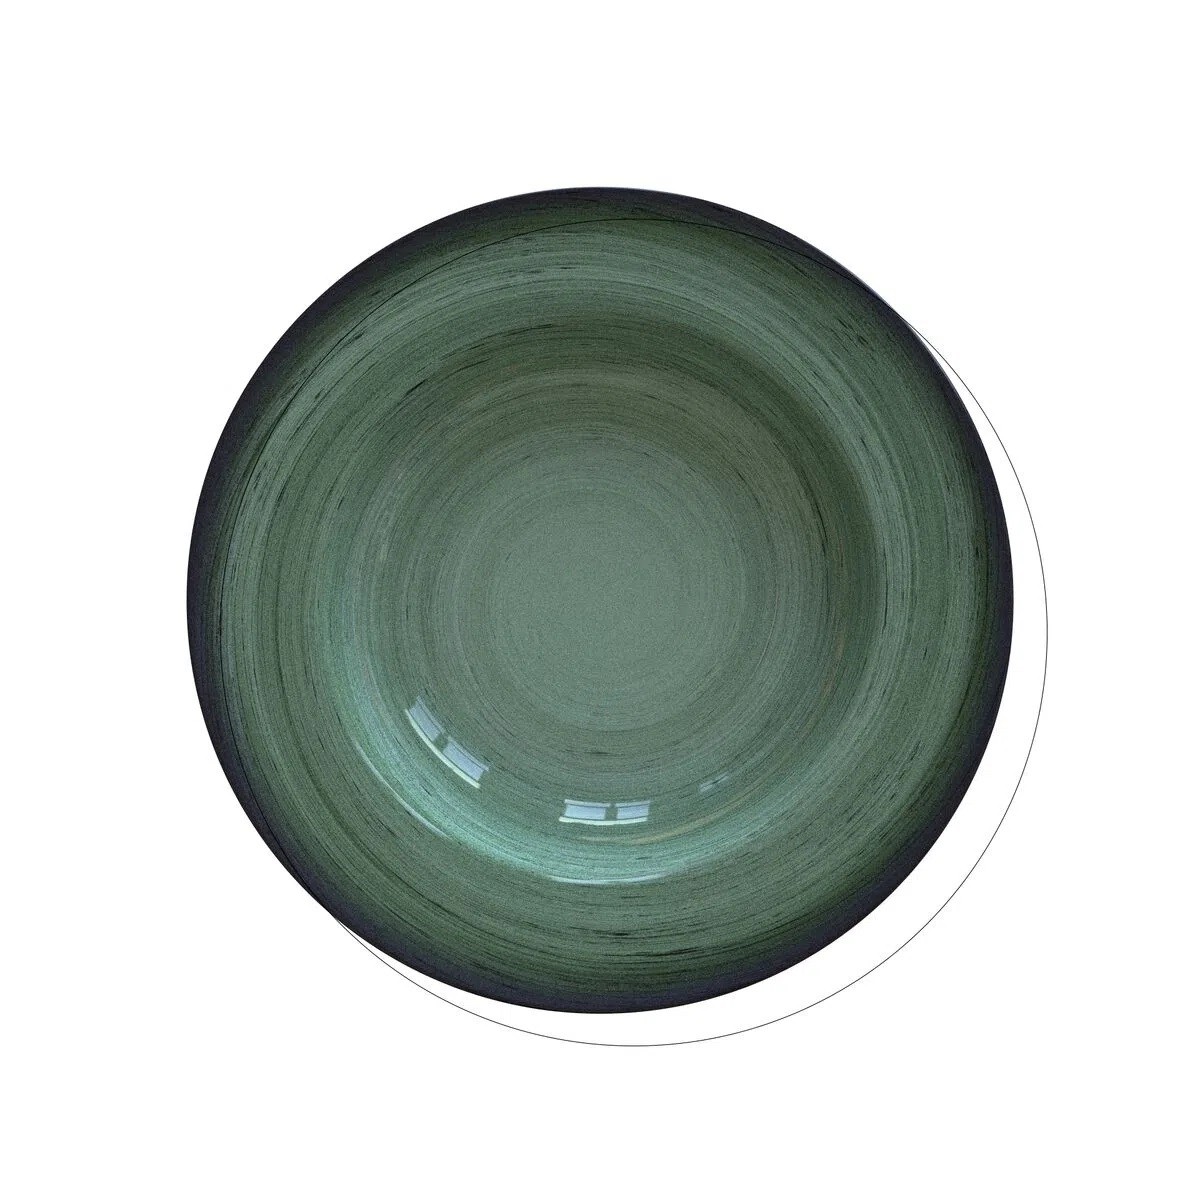 Prato Fundo Tramontina Rústico Verde em Porcelana Decorada 23 cm